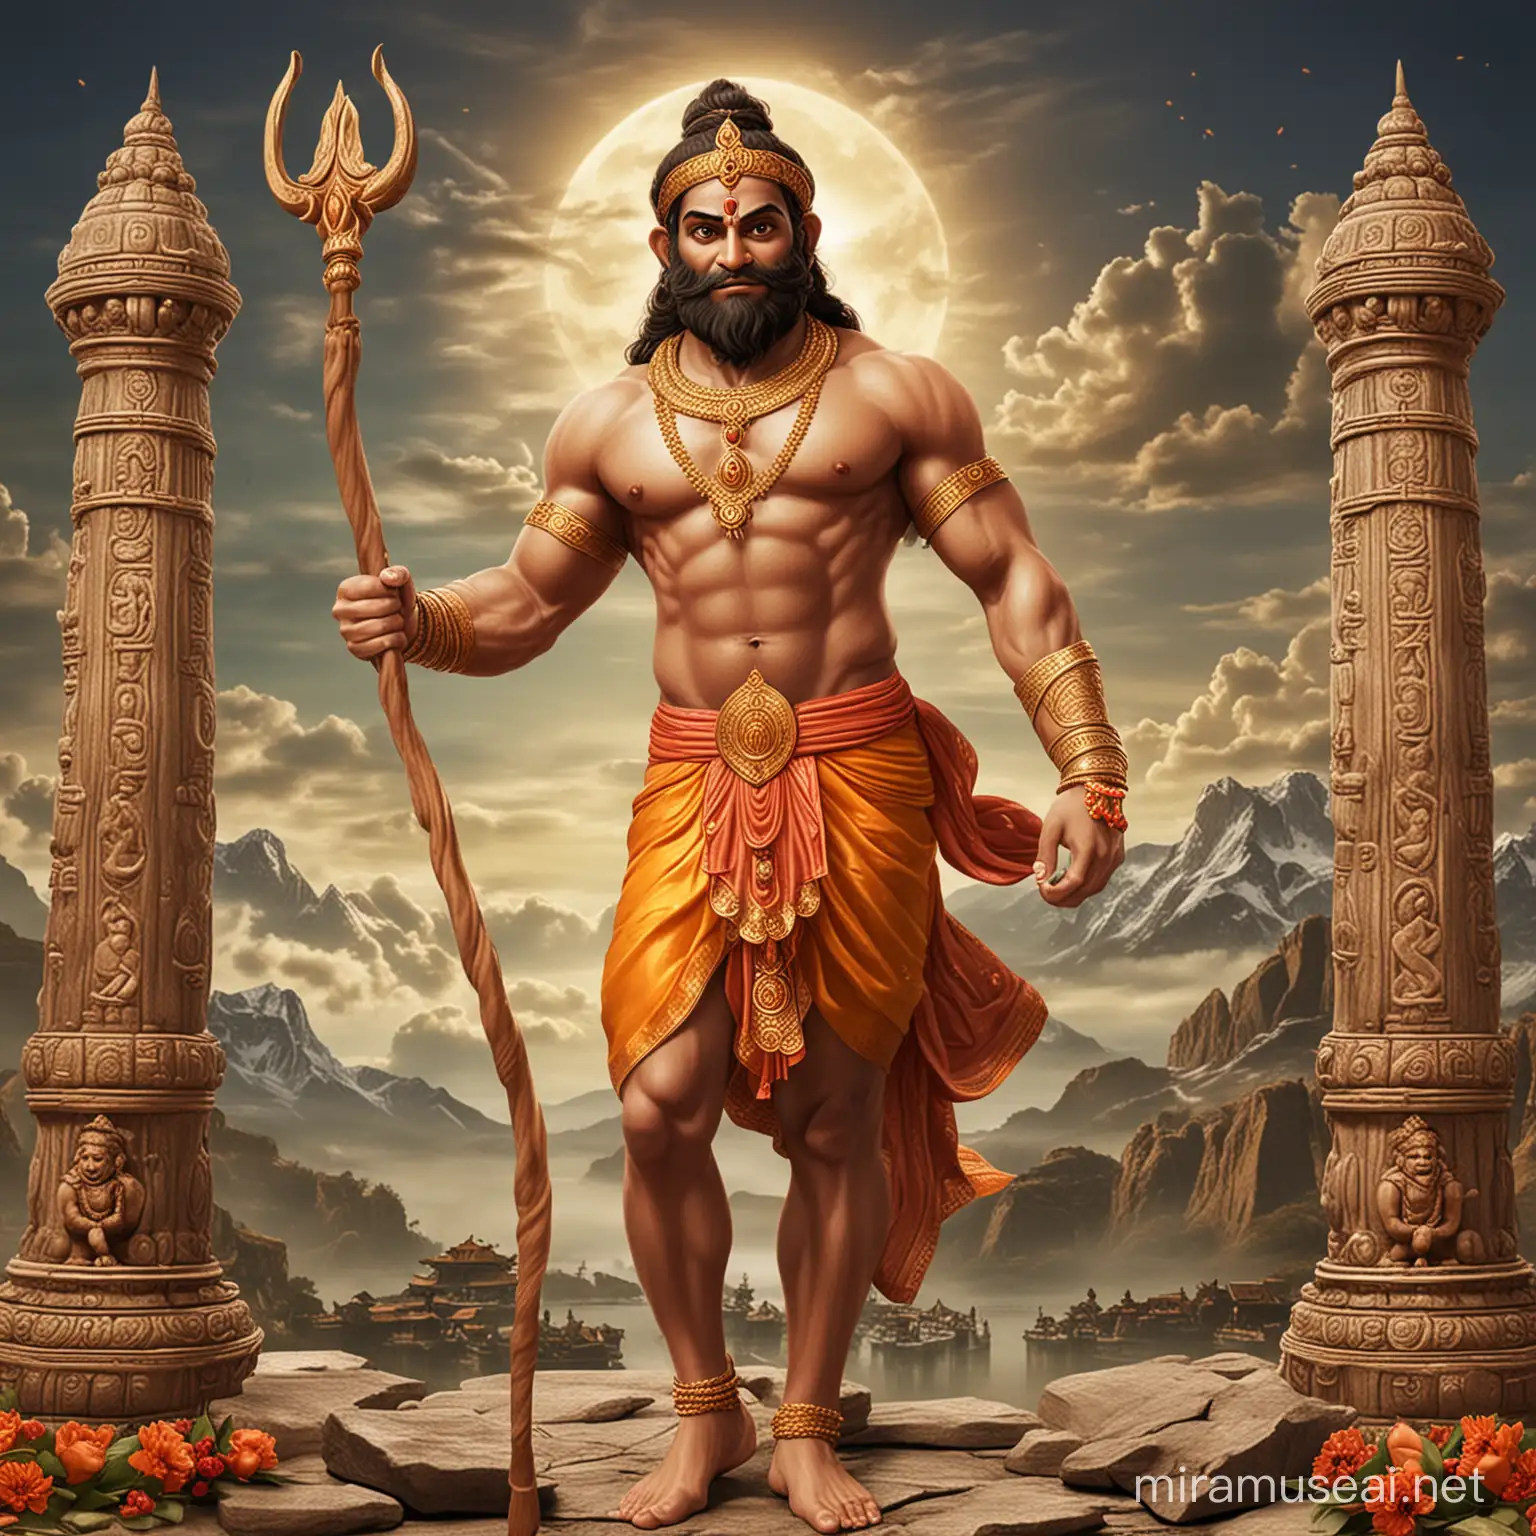 3D Rendering of Shri Ram and Hanuman in Majestic Pose